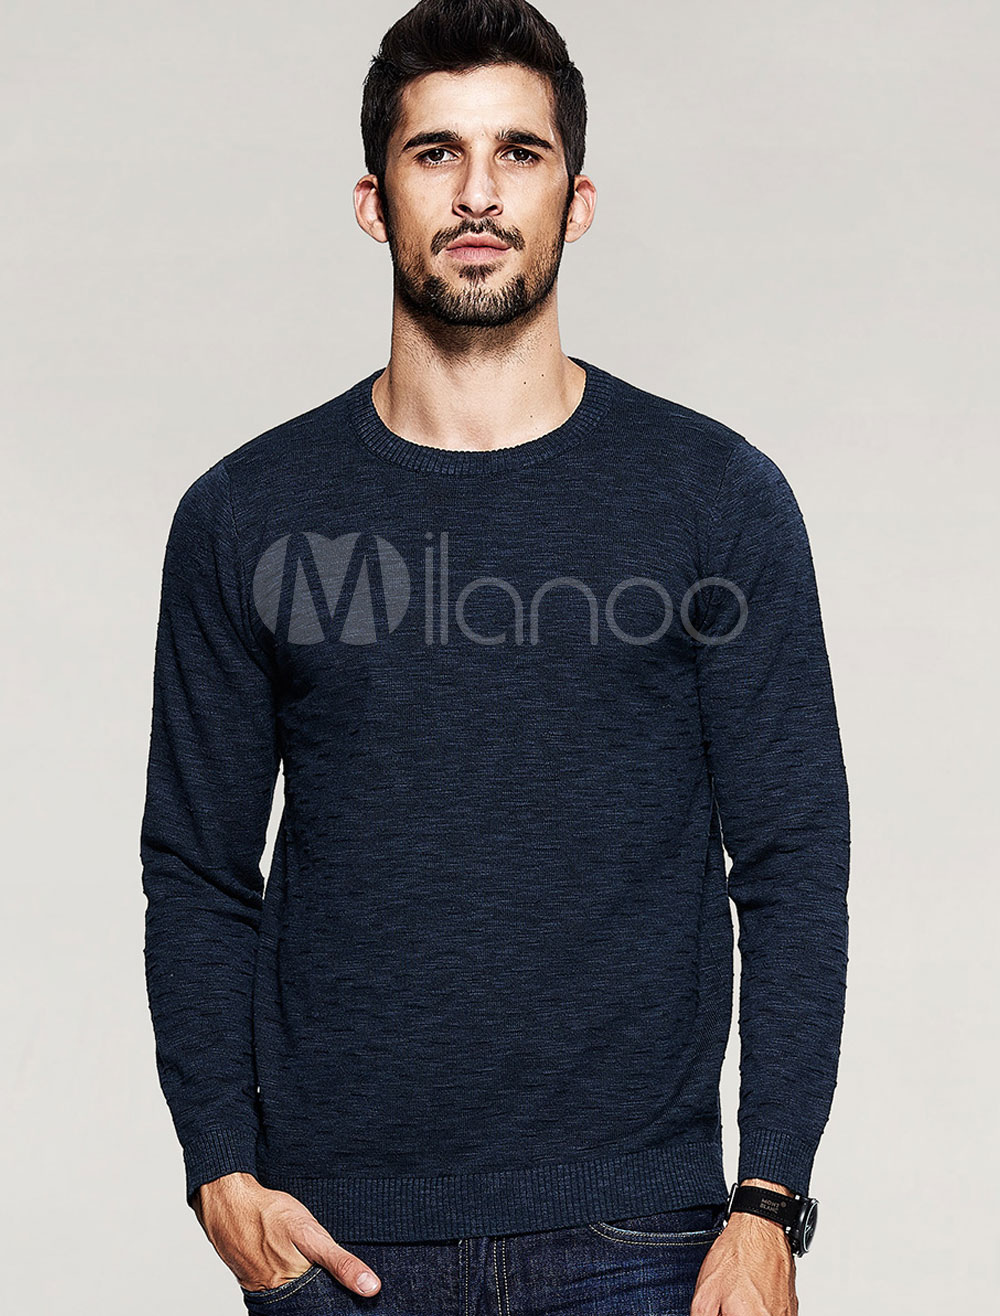 Men's Pullover Swerter Deep Blue Cotton Knitwear - Milanoo.com